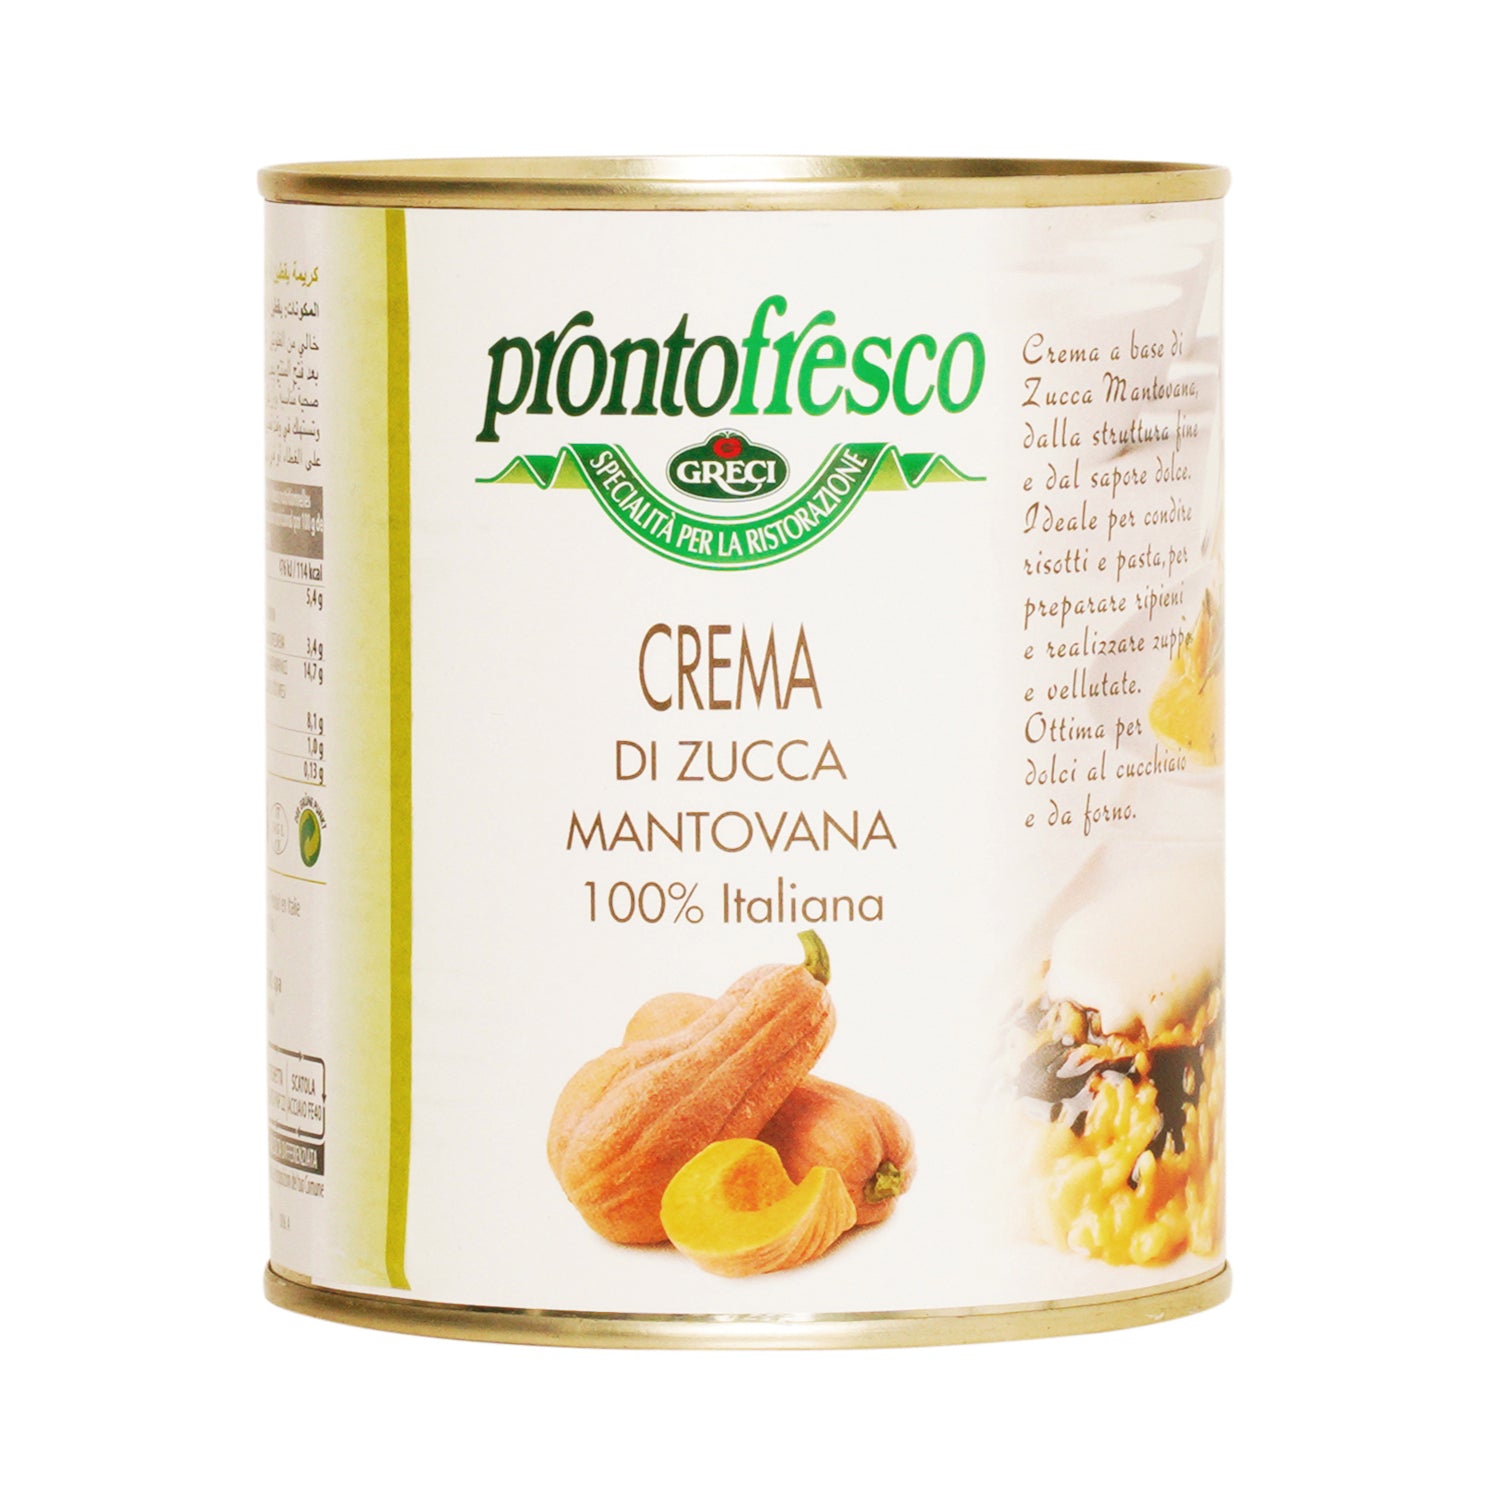 Greci Pronto Fresco - Crema di Zucca Mantovana Pumpkin Cream - 830g